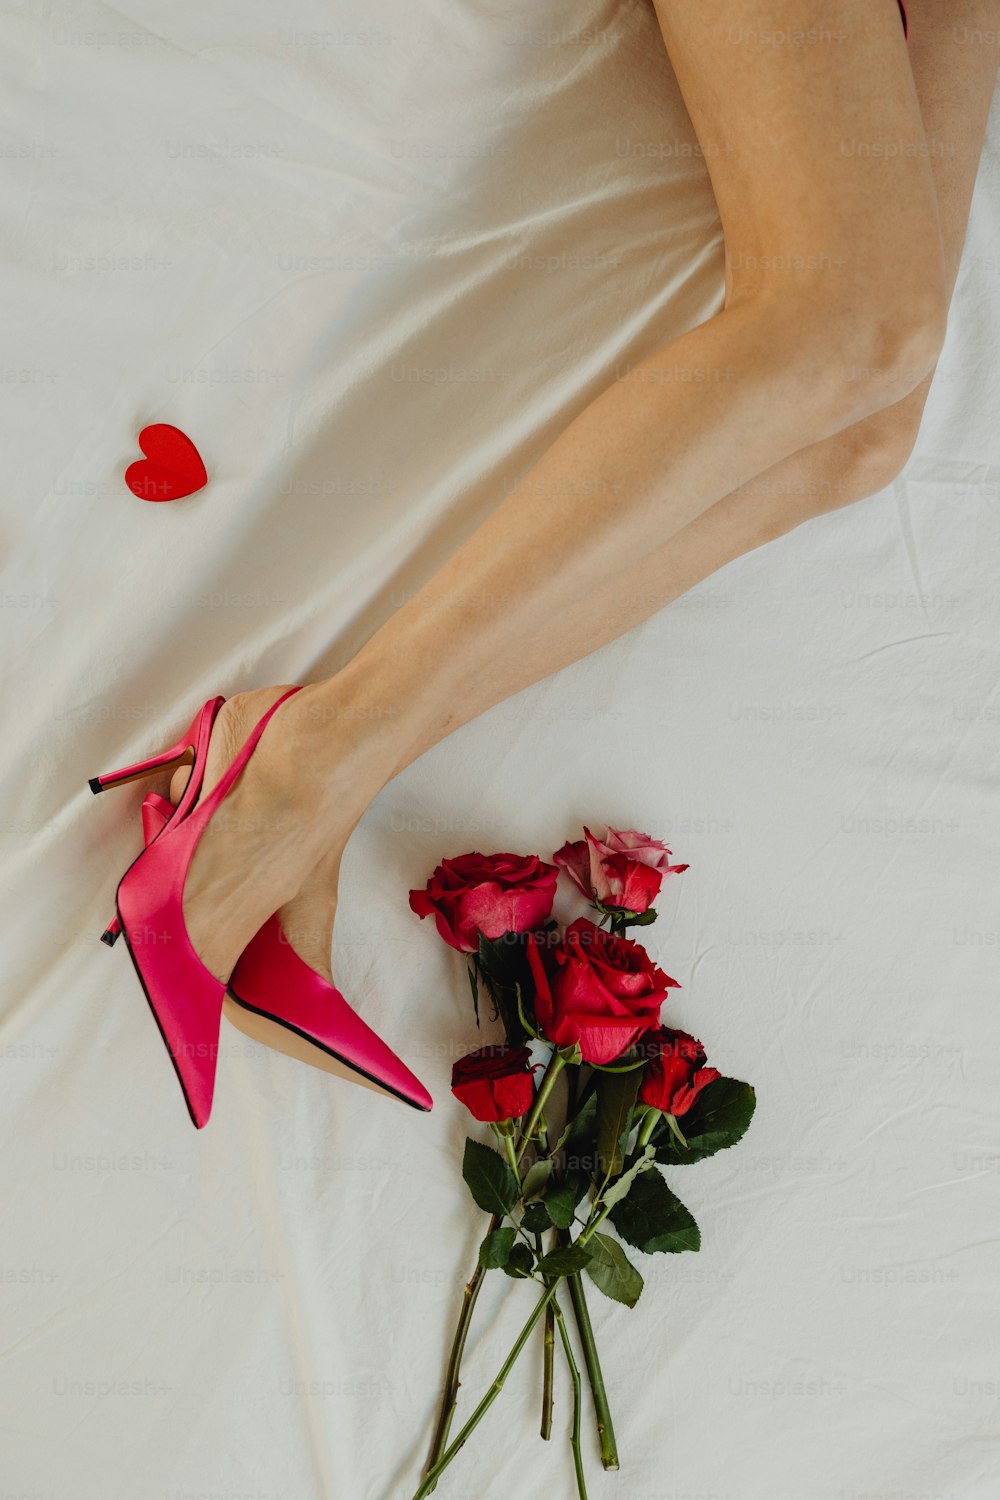 uma mulher deitada em uma cama com um buquê de rosas